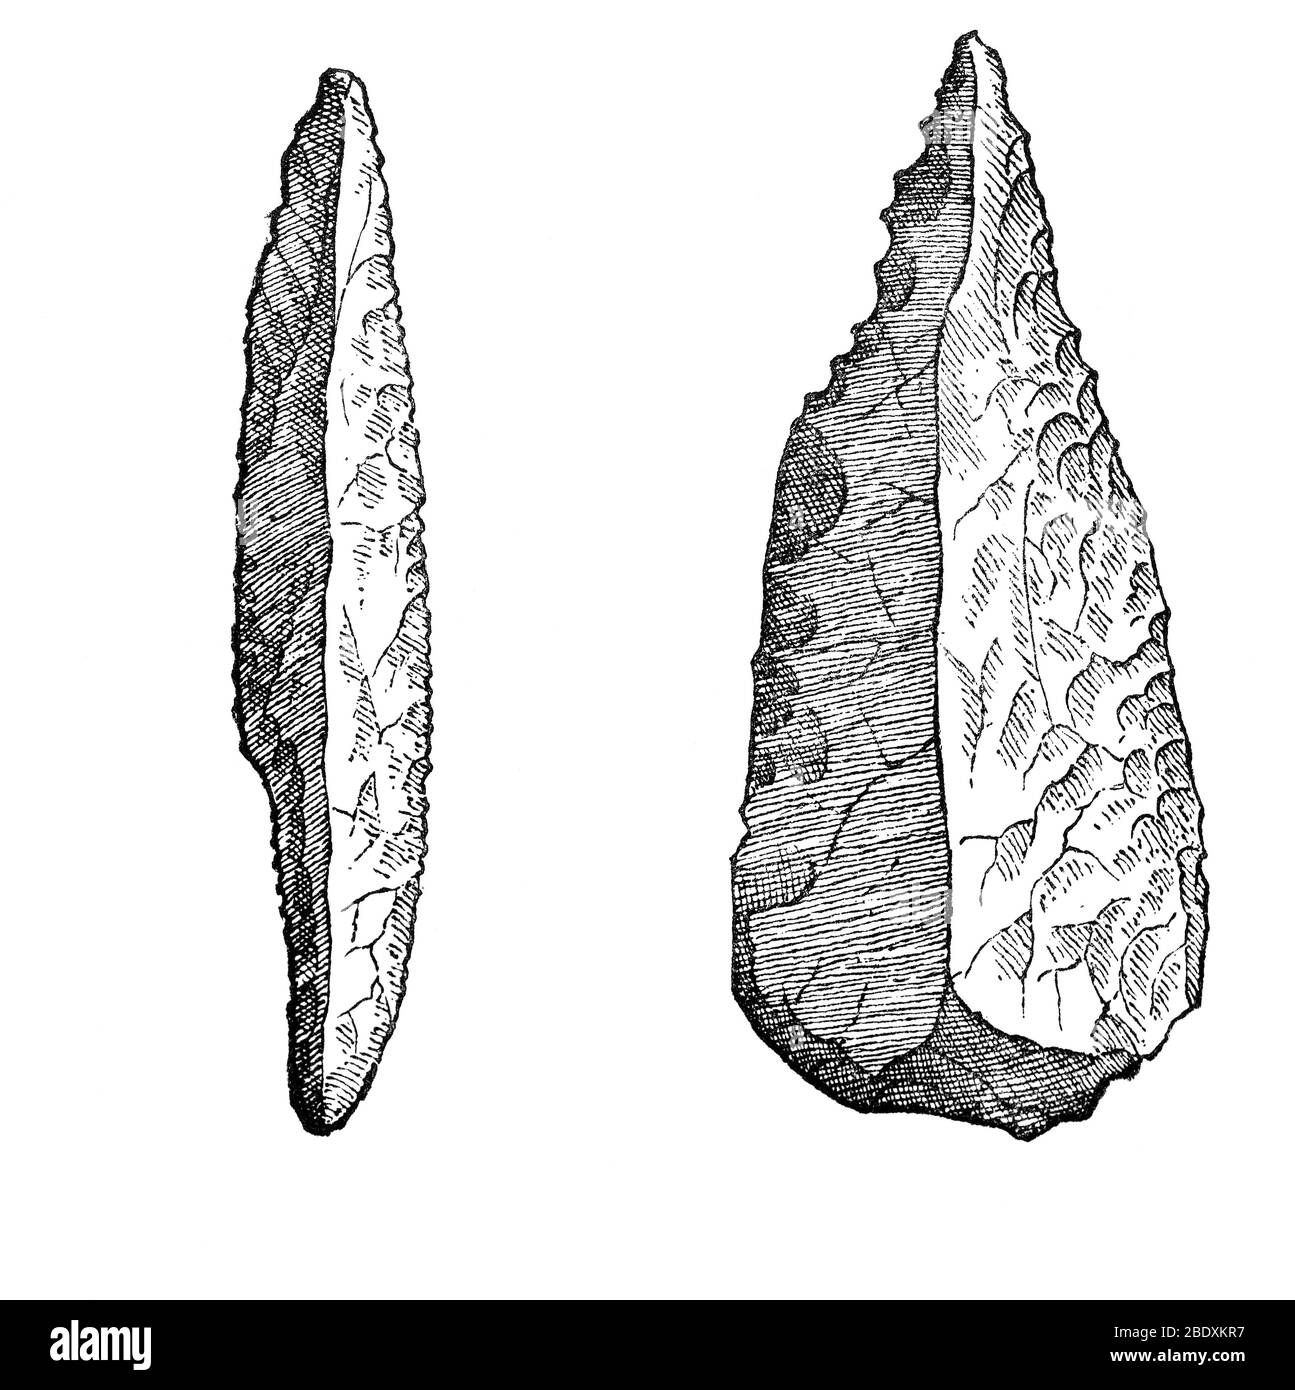 Cuchillo de la Flint y Hatchet de la Flint, herramientas de la Edad de Piedra Foto de stock